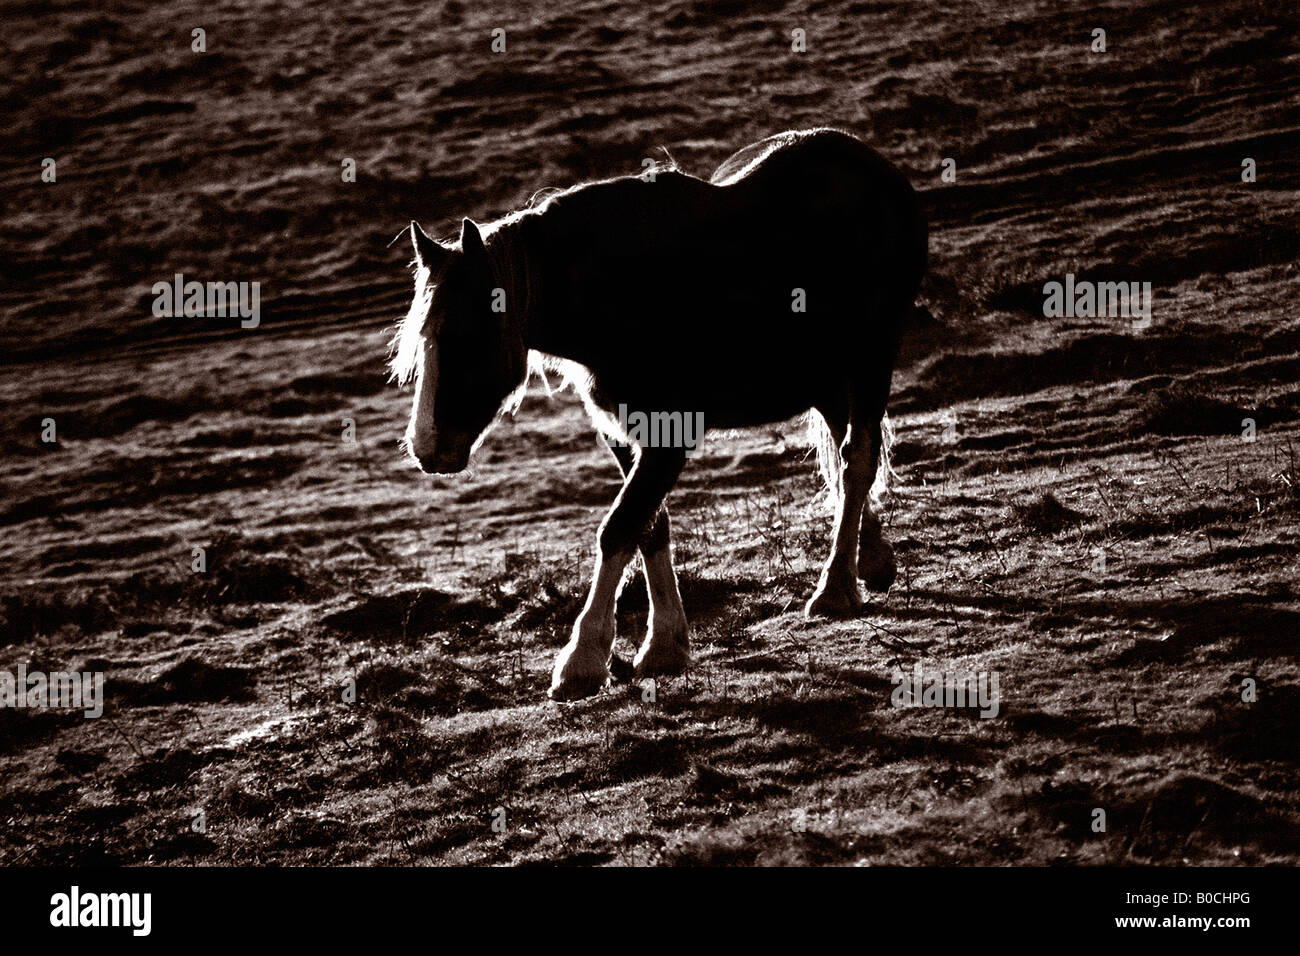 Dies ist ein Foto eines einsamen wilde Ponys in einigen walisischen Bergen genommen. Es ist ein schwarz / weiß, Sepia getönt Bild. Stockfoto